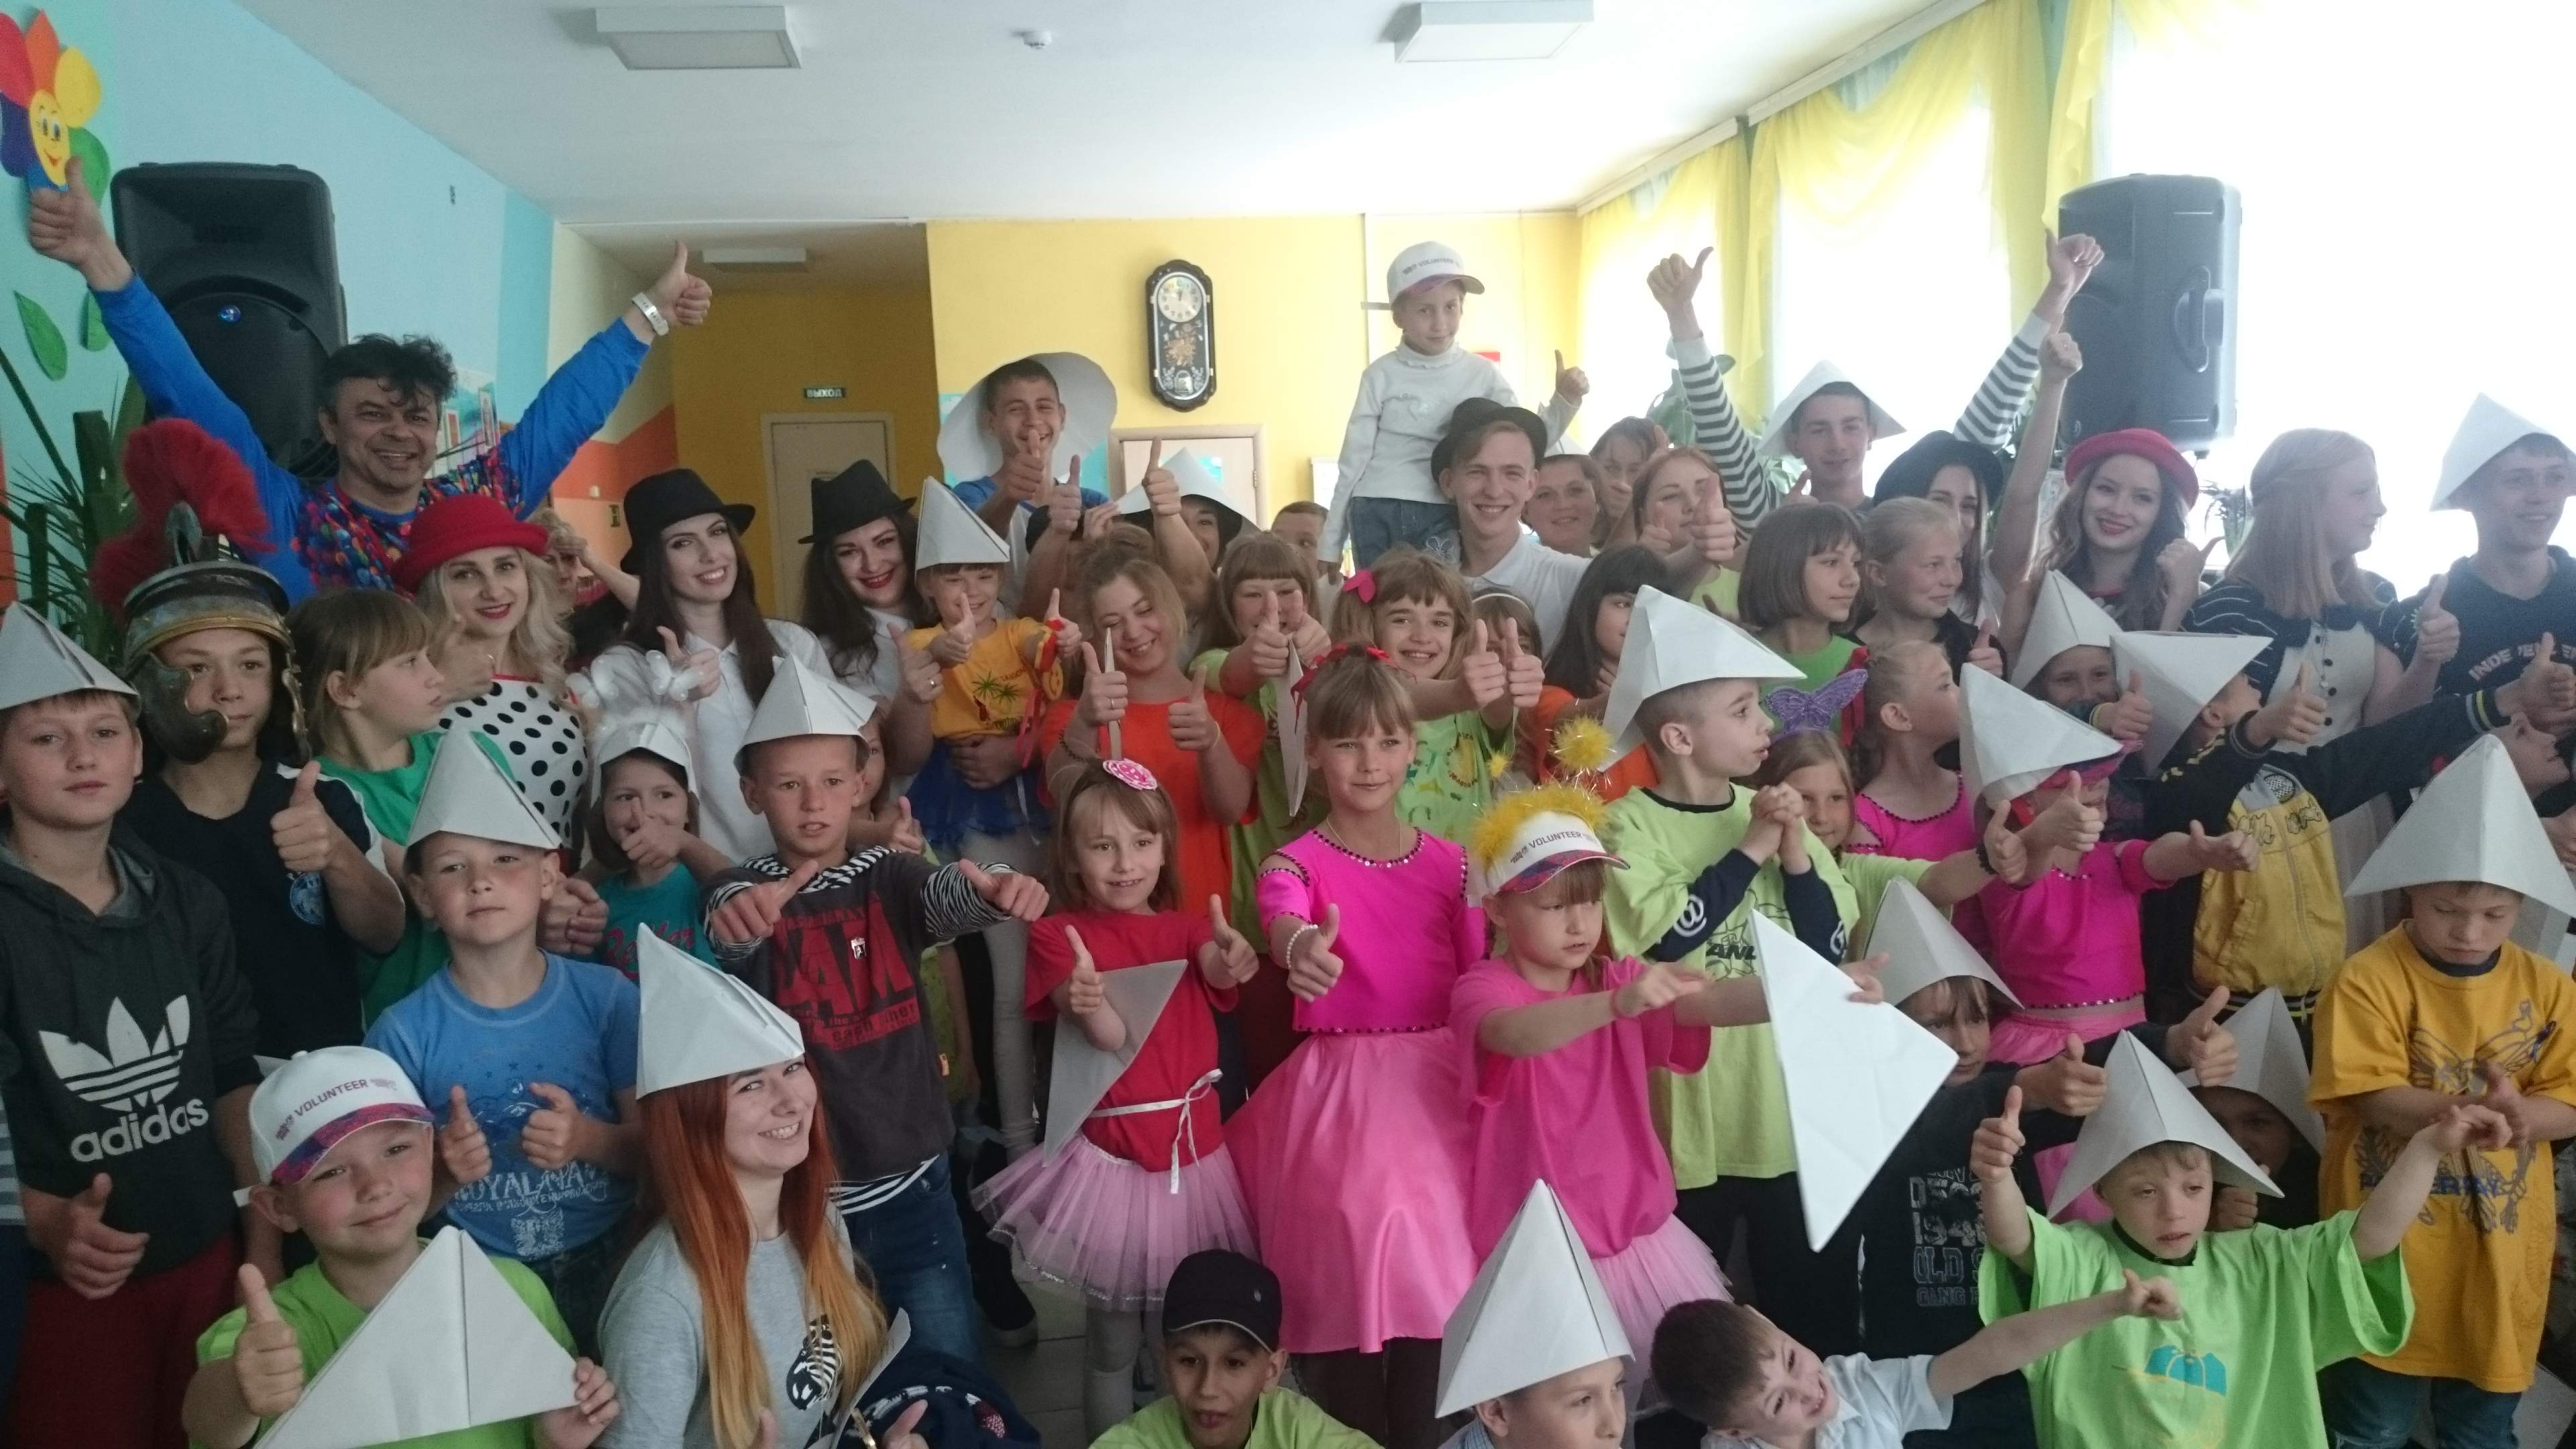 В честь праздника Дня защиты детей творческие коллективы ВГУЭС  поздравили  воспитанников  СРЦН «Парус надежды»  праздничной  программой.